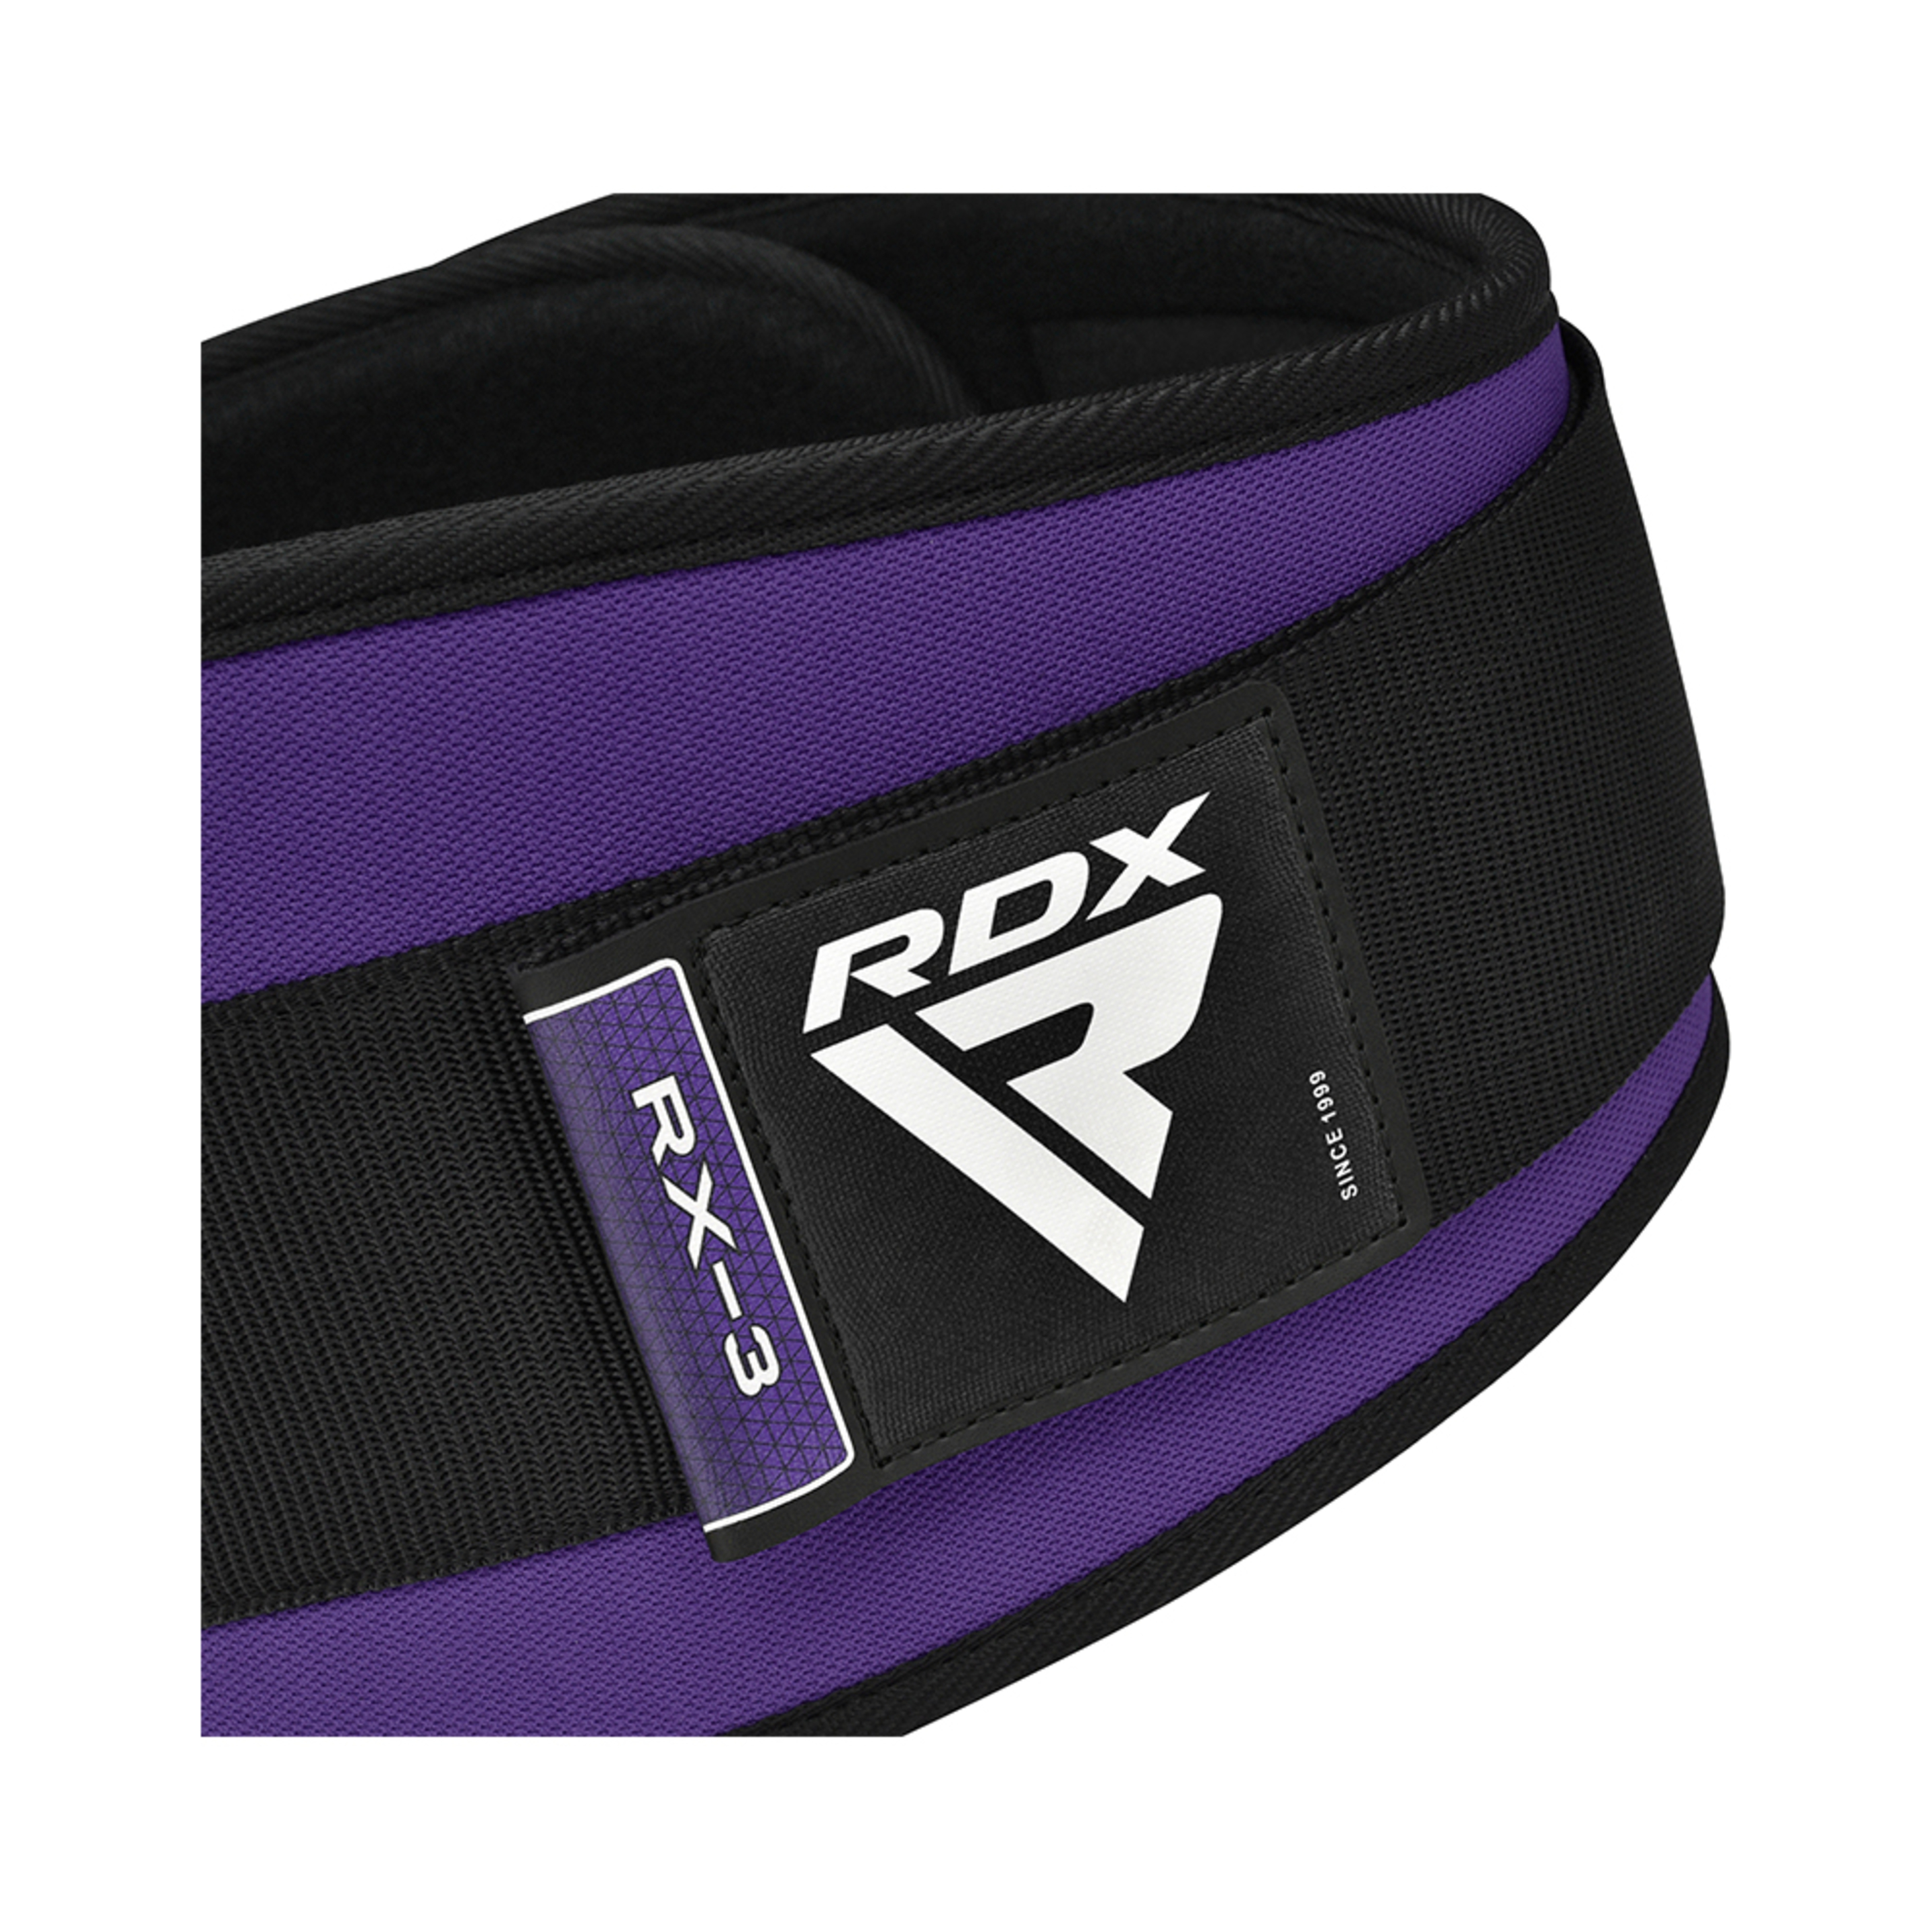 Cinturón De Fitness Rdx Wbe-rx3 - Púrpura - Weightlifting Powerlifting Fitness  MKP